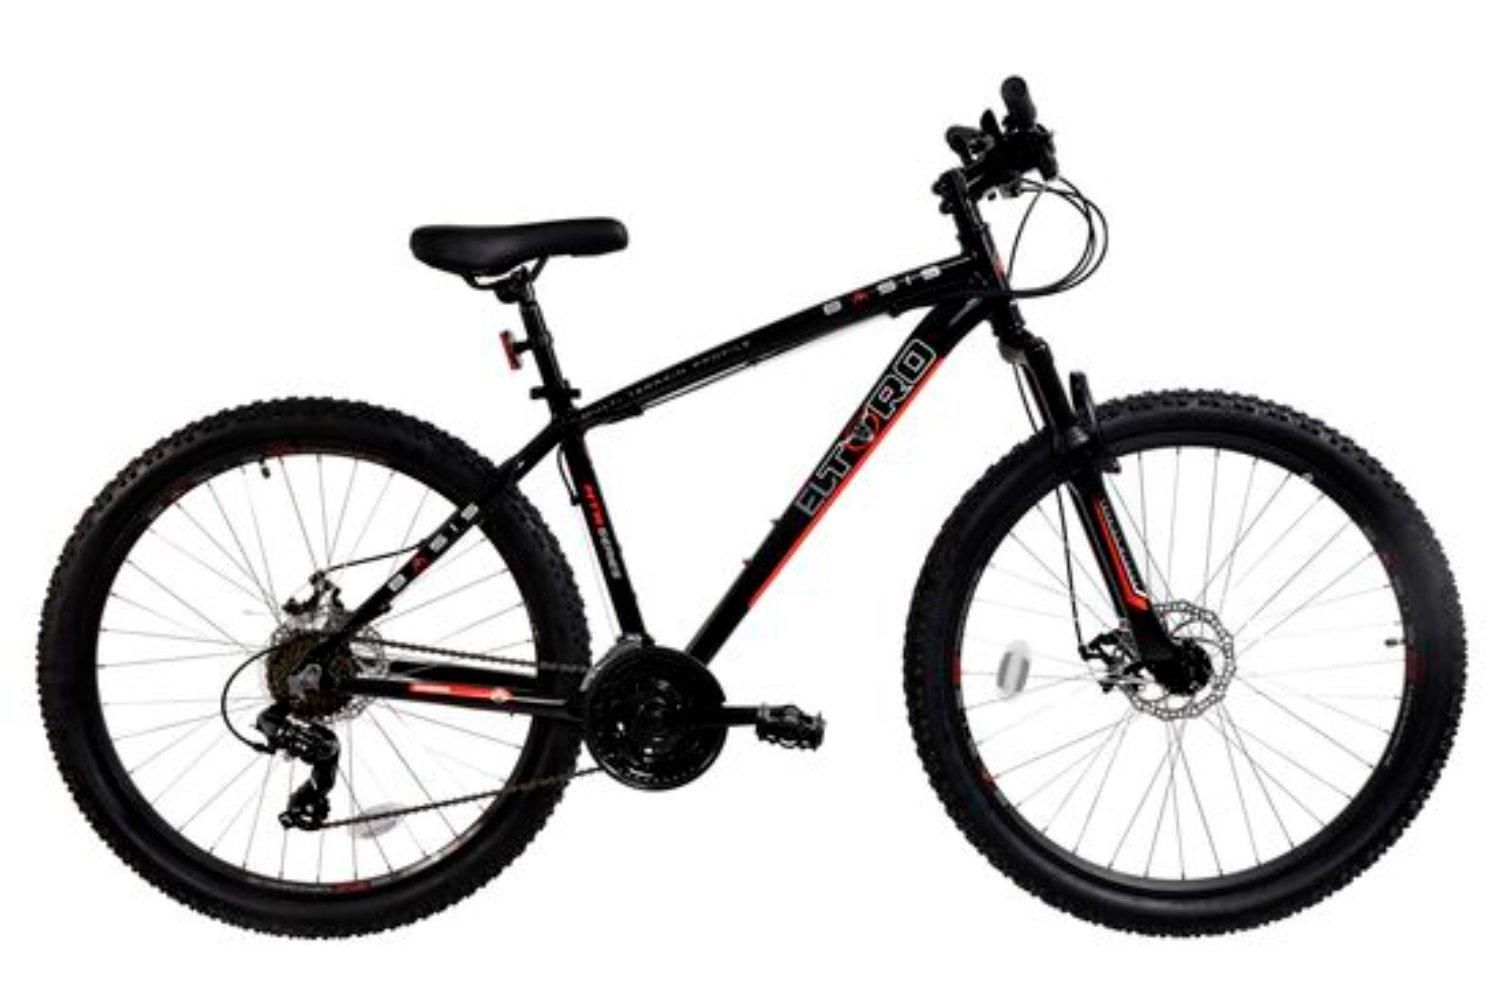 El Toro Hardtail Mountain Bike, 27.5in Wheel - Black/Red